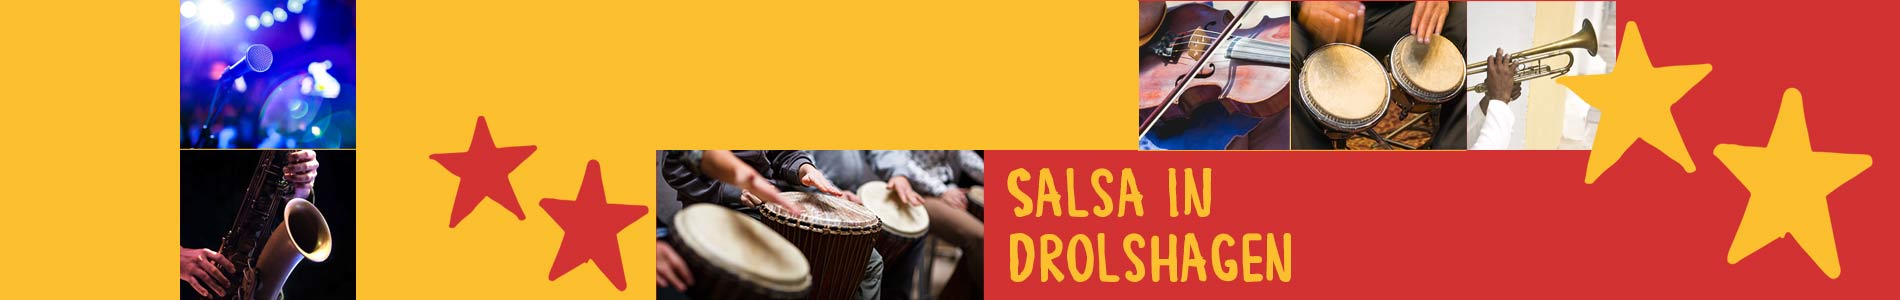 Salsa in Drolshagen – Salsa lernen und tanzen, Tanzkurse, Partys, Veranstaltungen